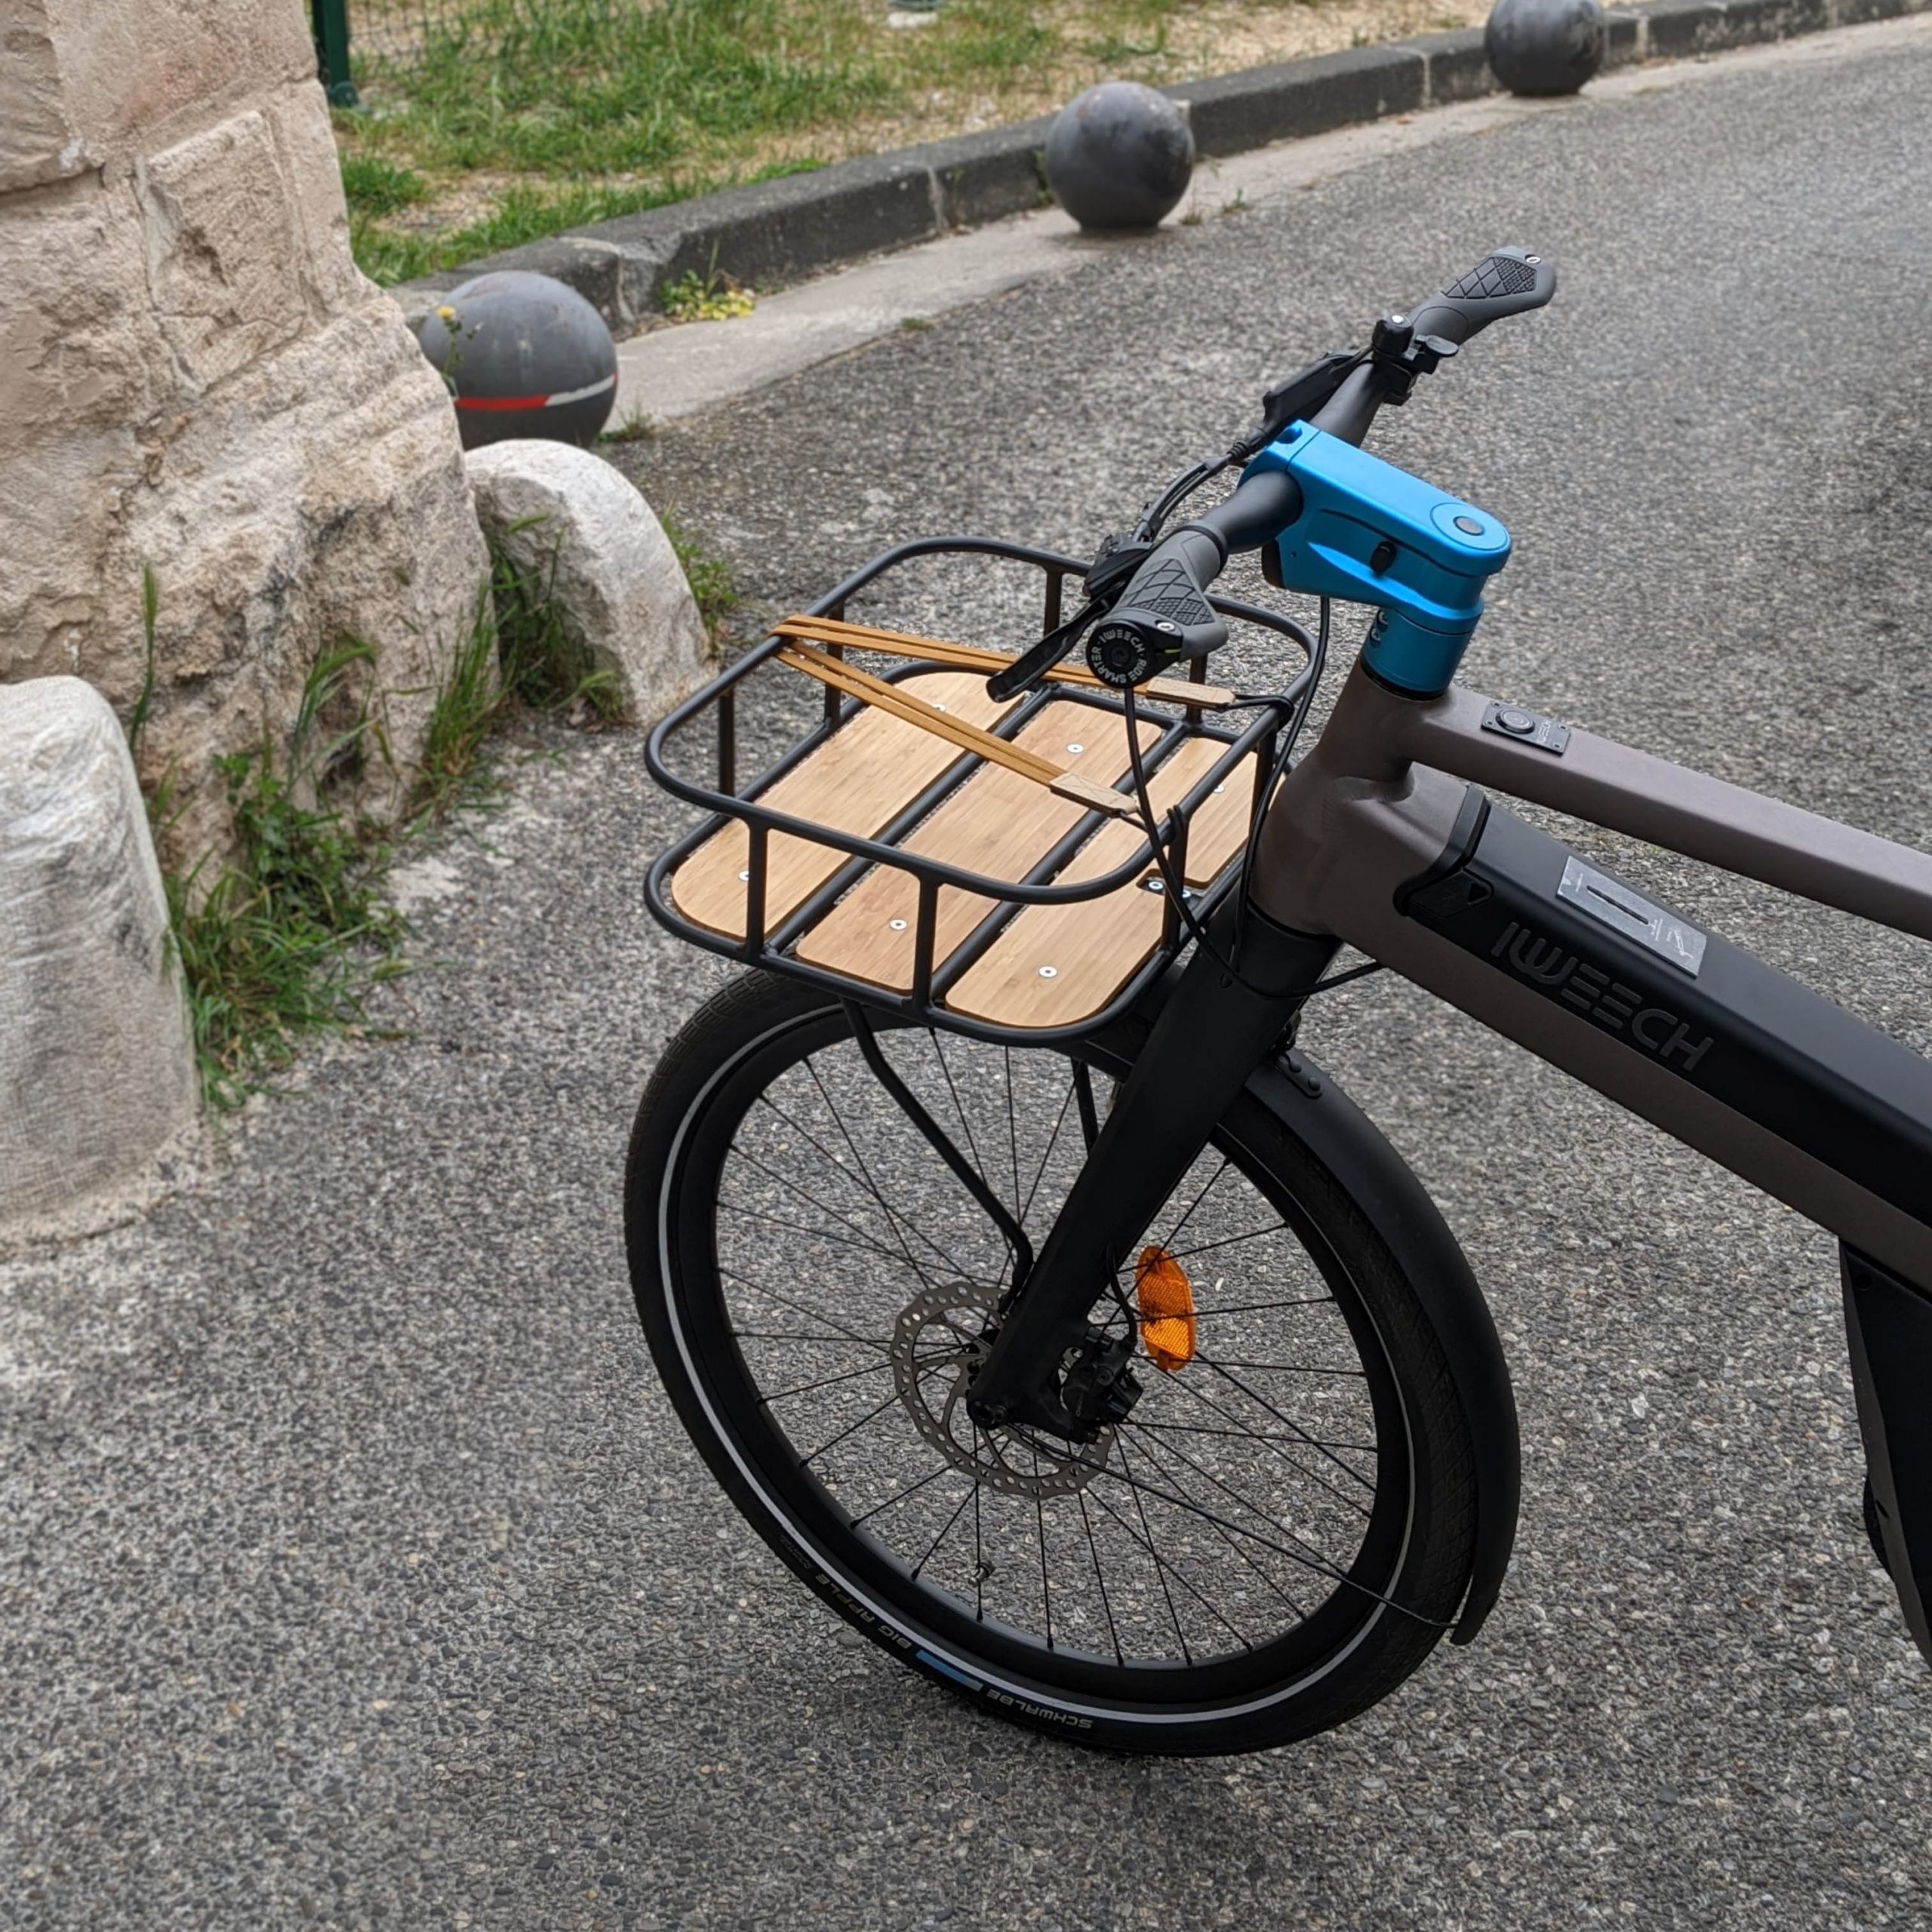 Porte bagage avant adaptable uniquement sur vélo IWEECH